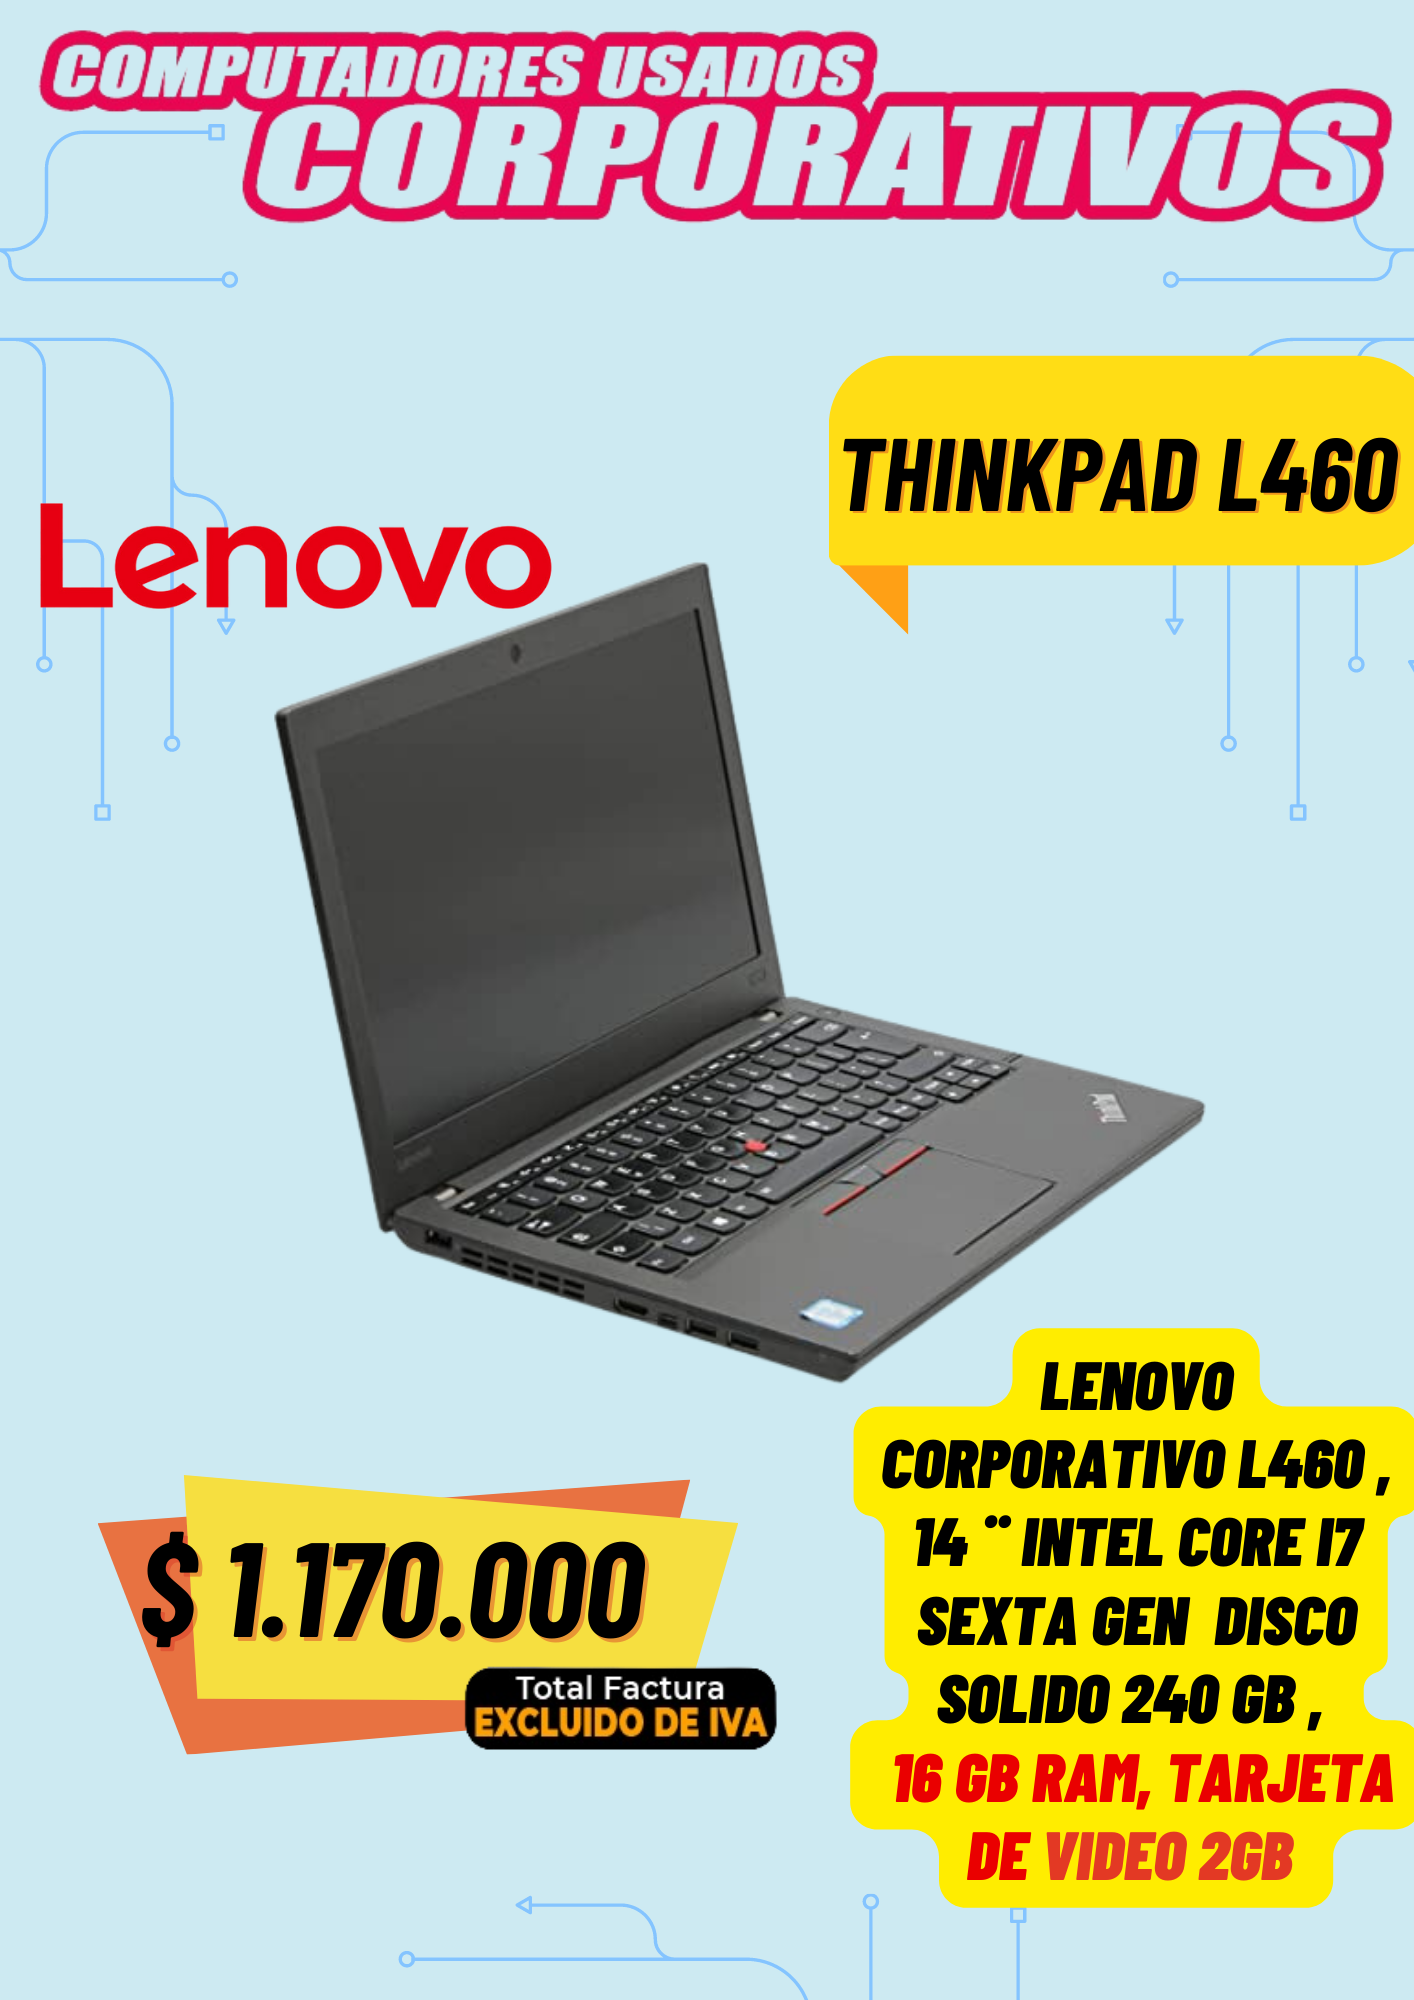 Lenovo l460 con tarjeta de video